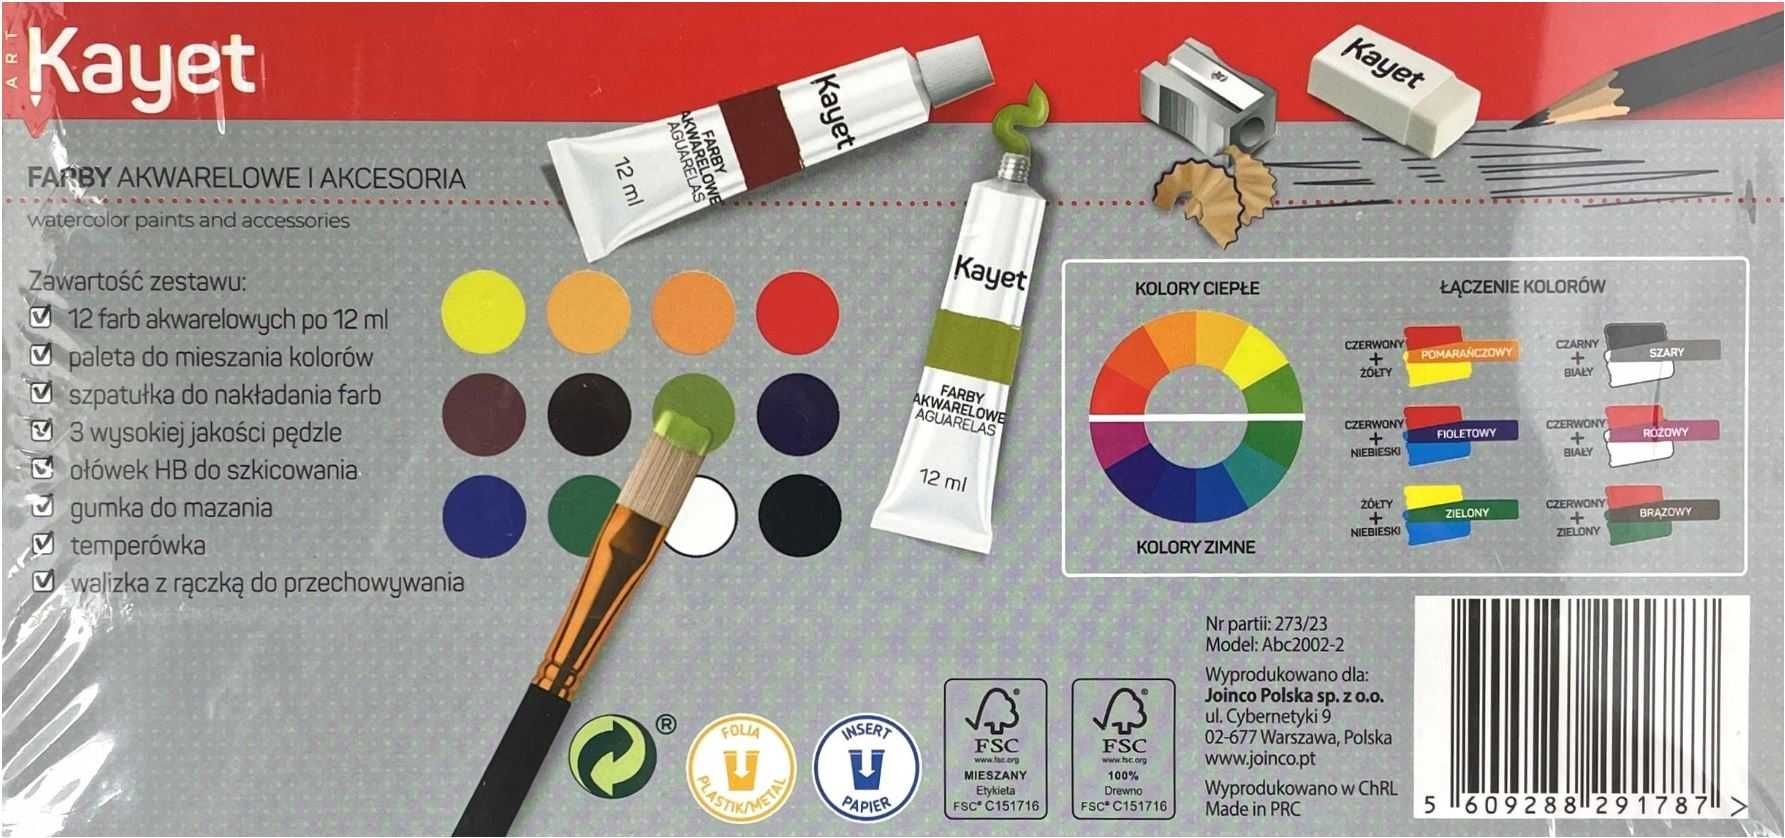 Zestaw do malowania Farby akwarelowe 12x12ml + dodatki w pudełku